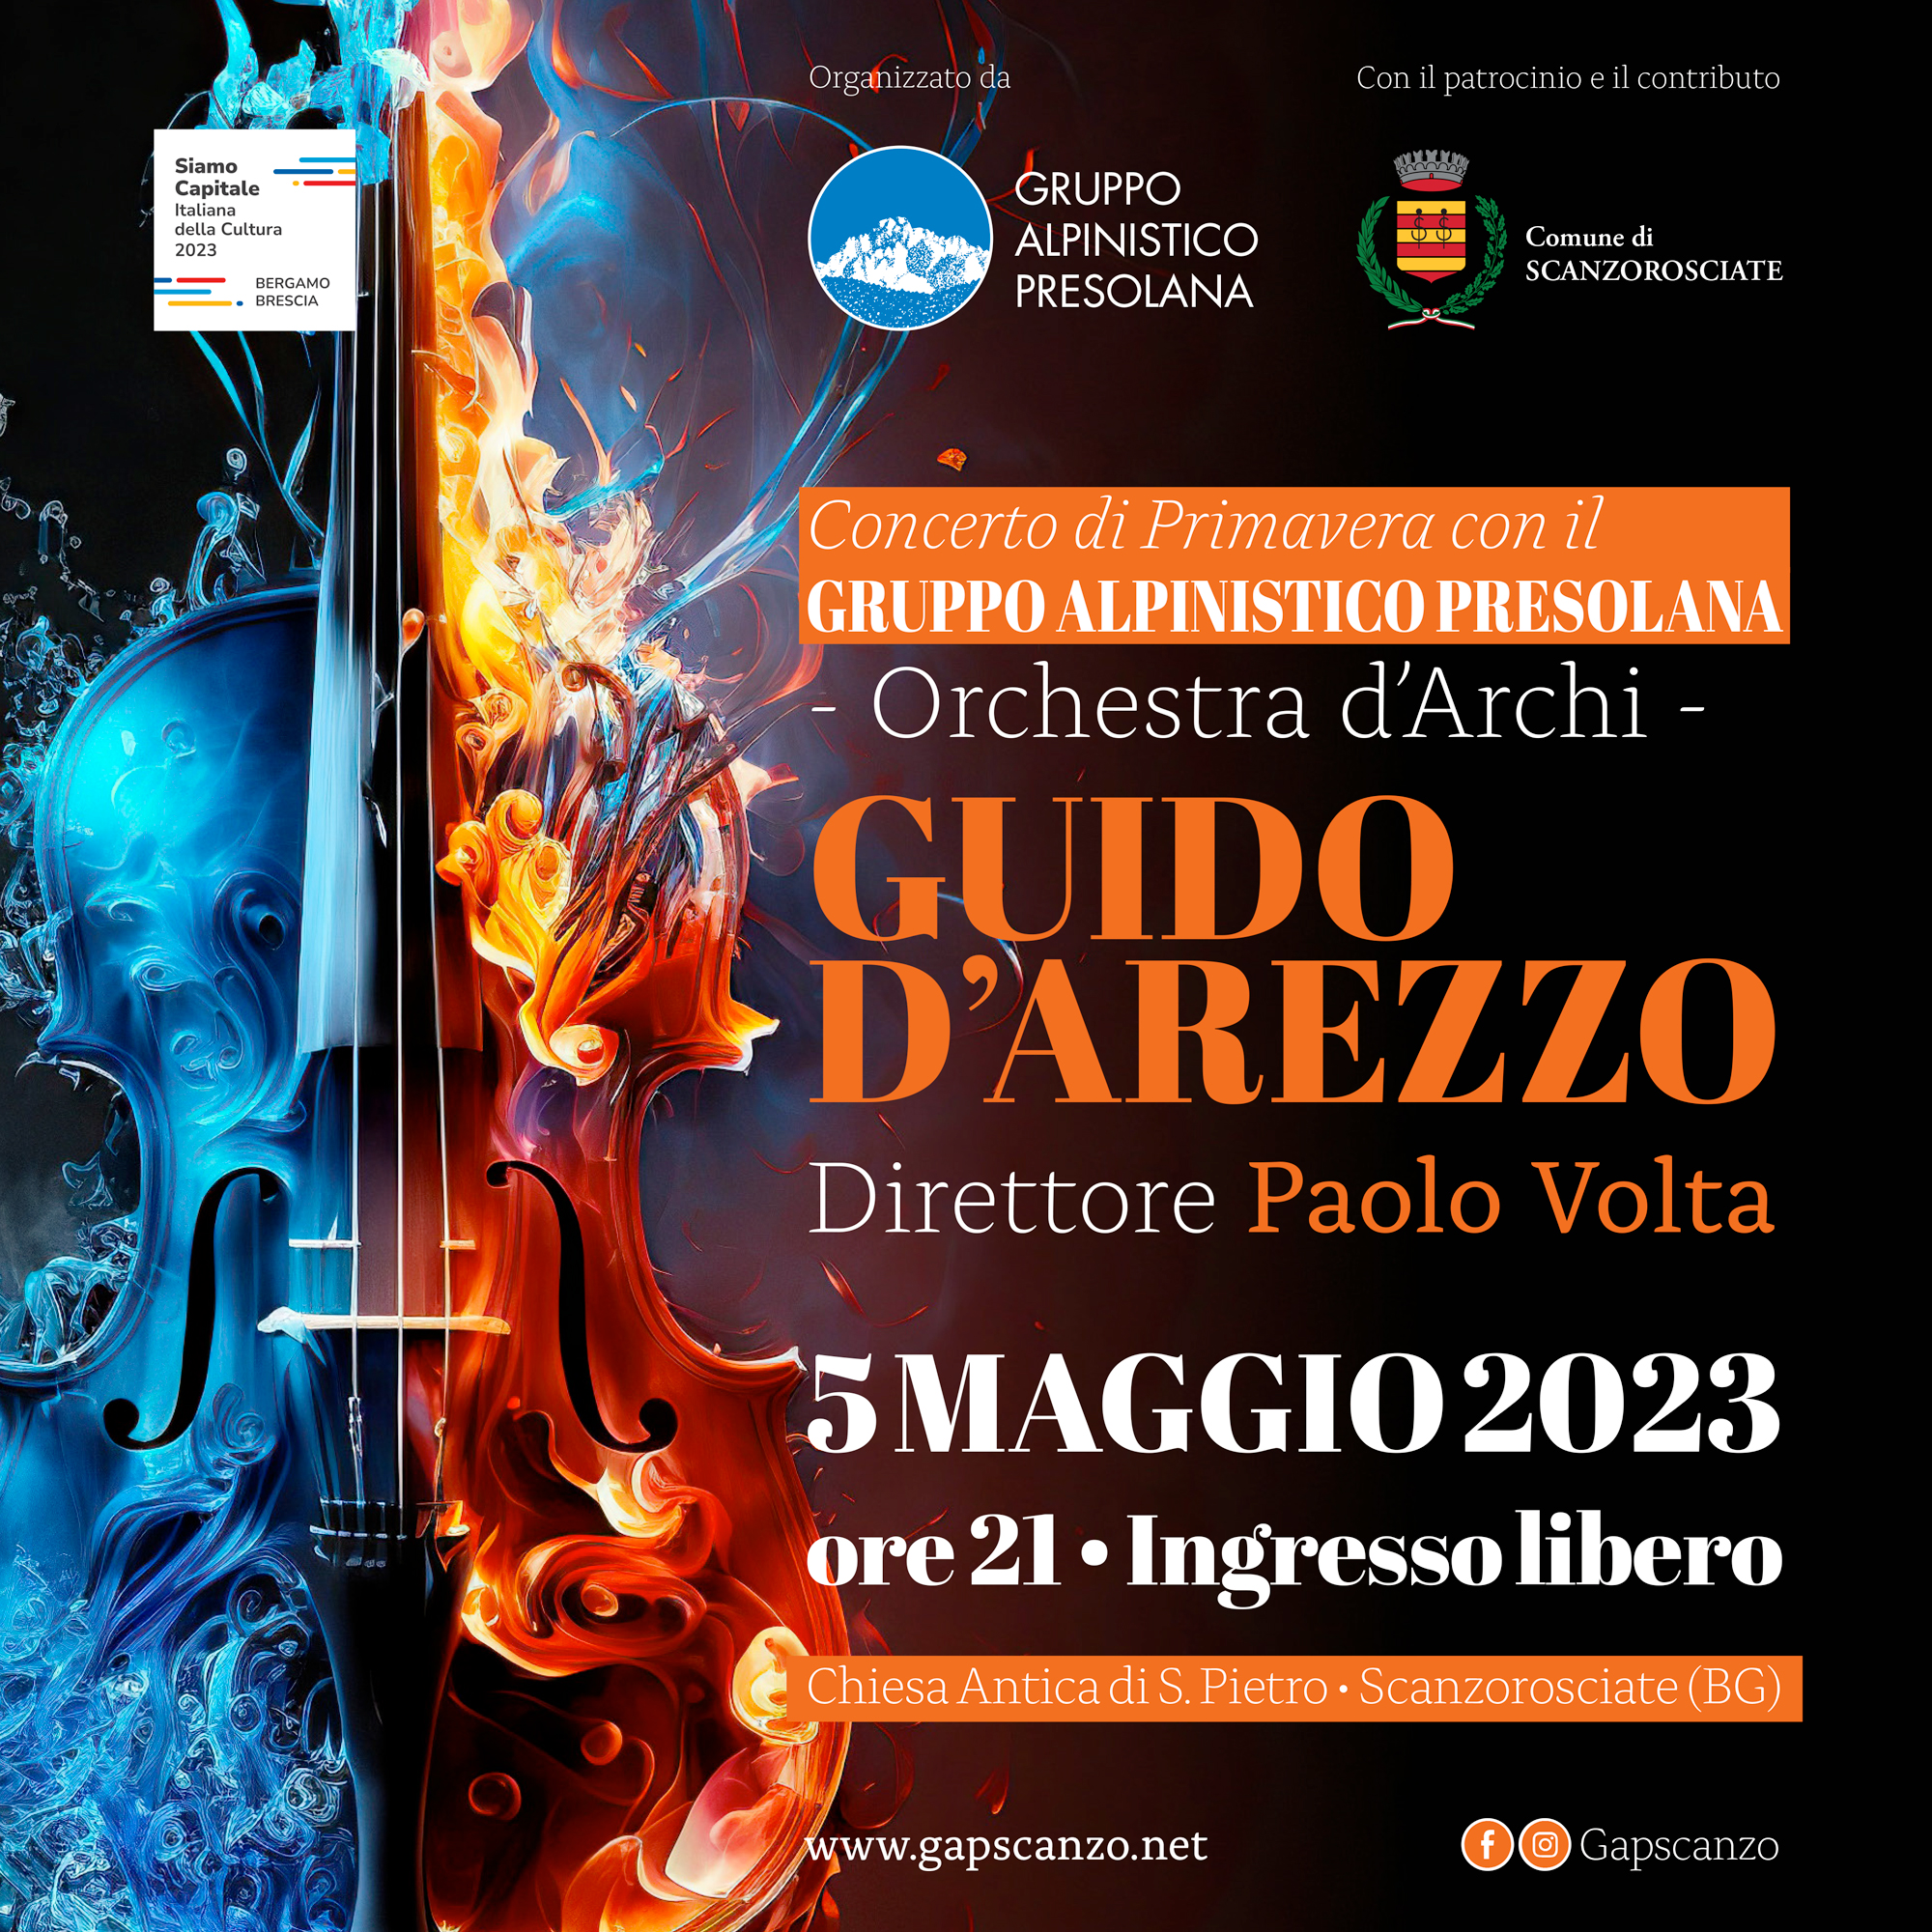 GAP_Concerto-Guido-Arezzo-2023_social